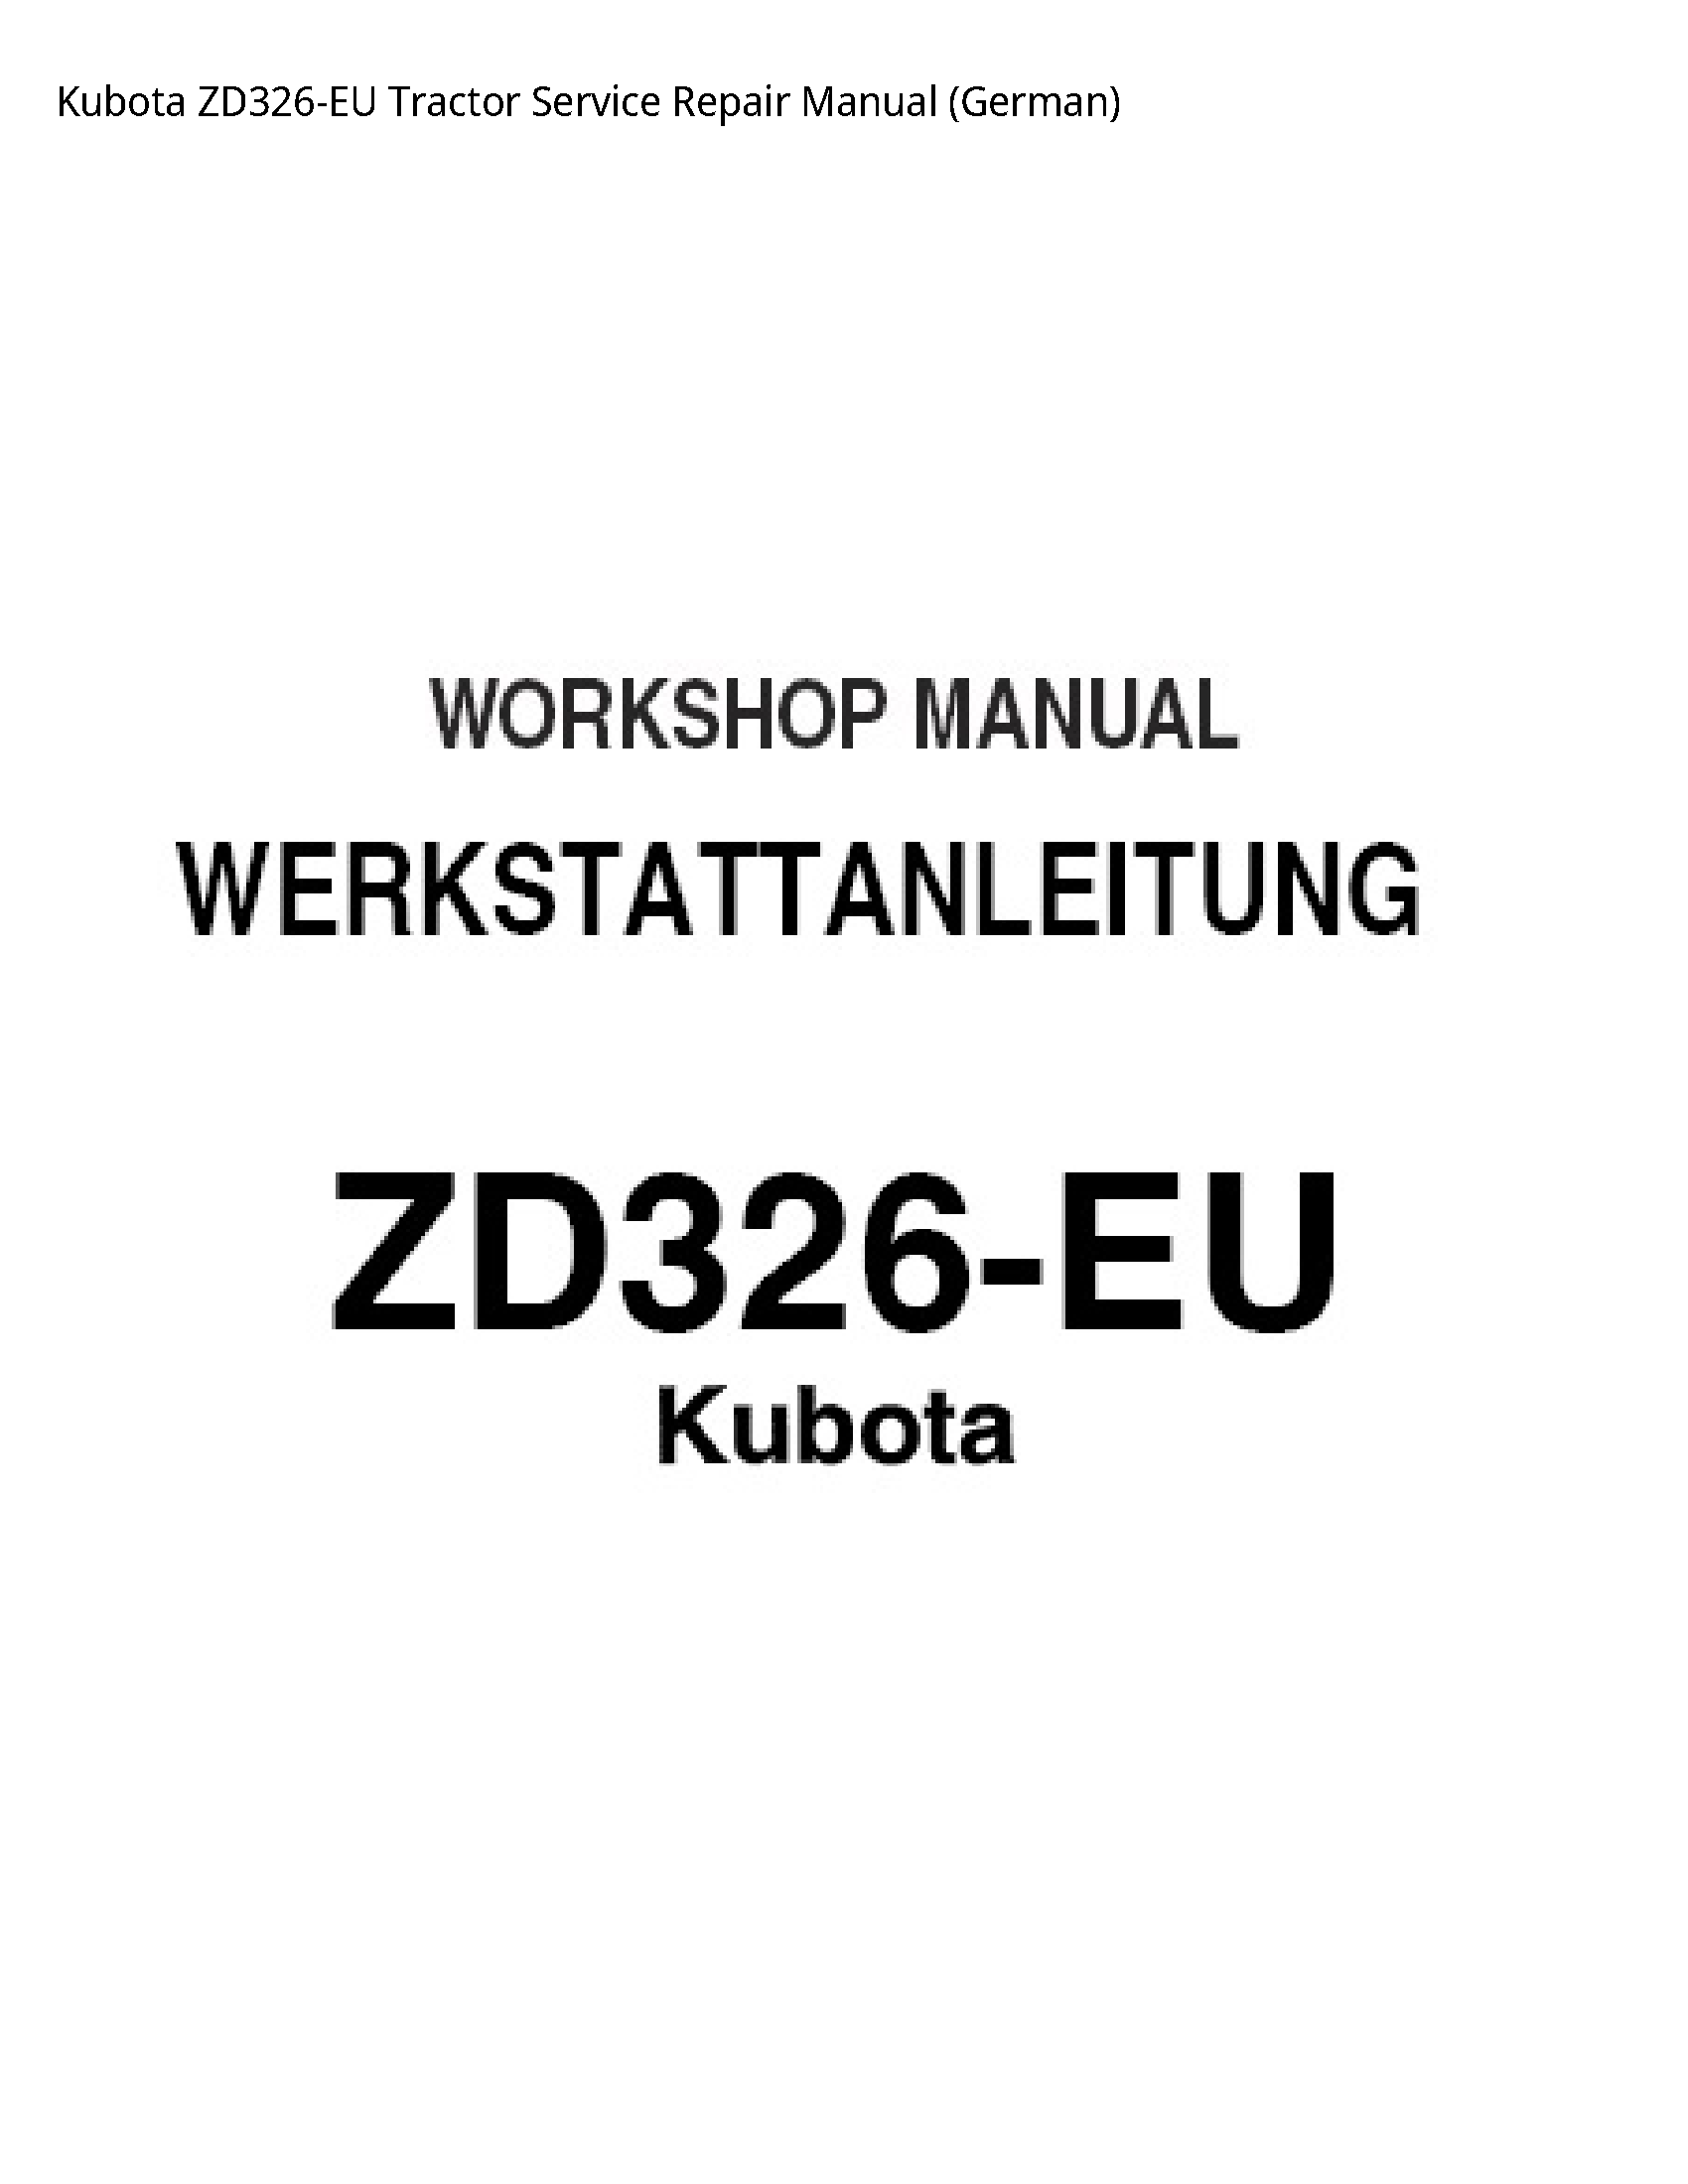 Kubota ZD326-EU Tractor Service Repair Manual - German